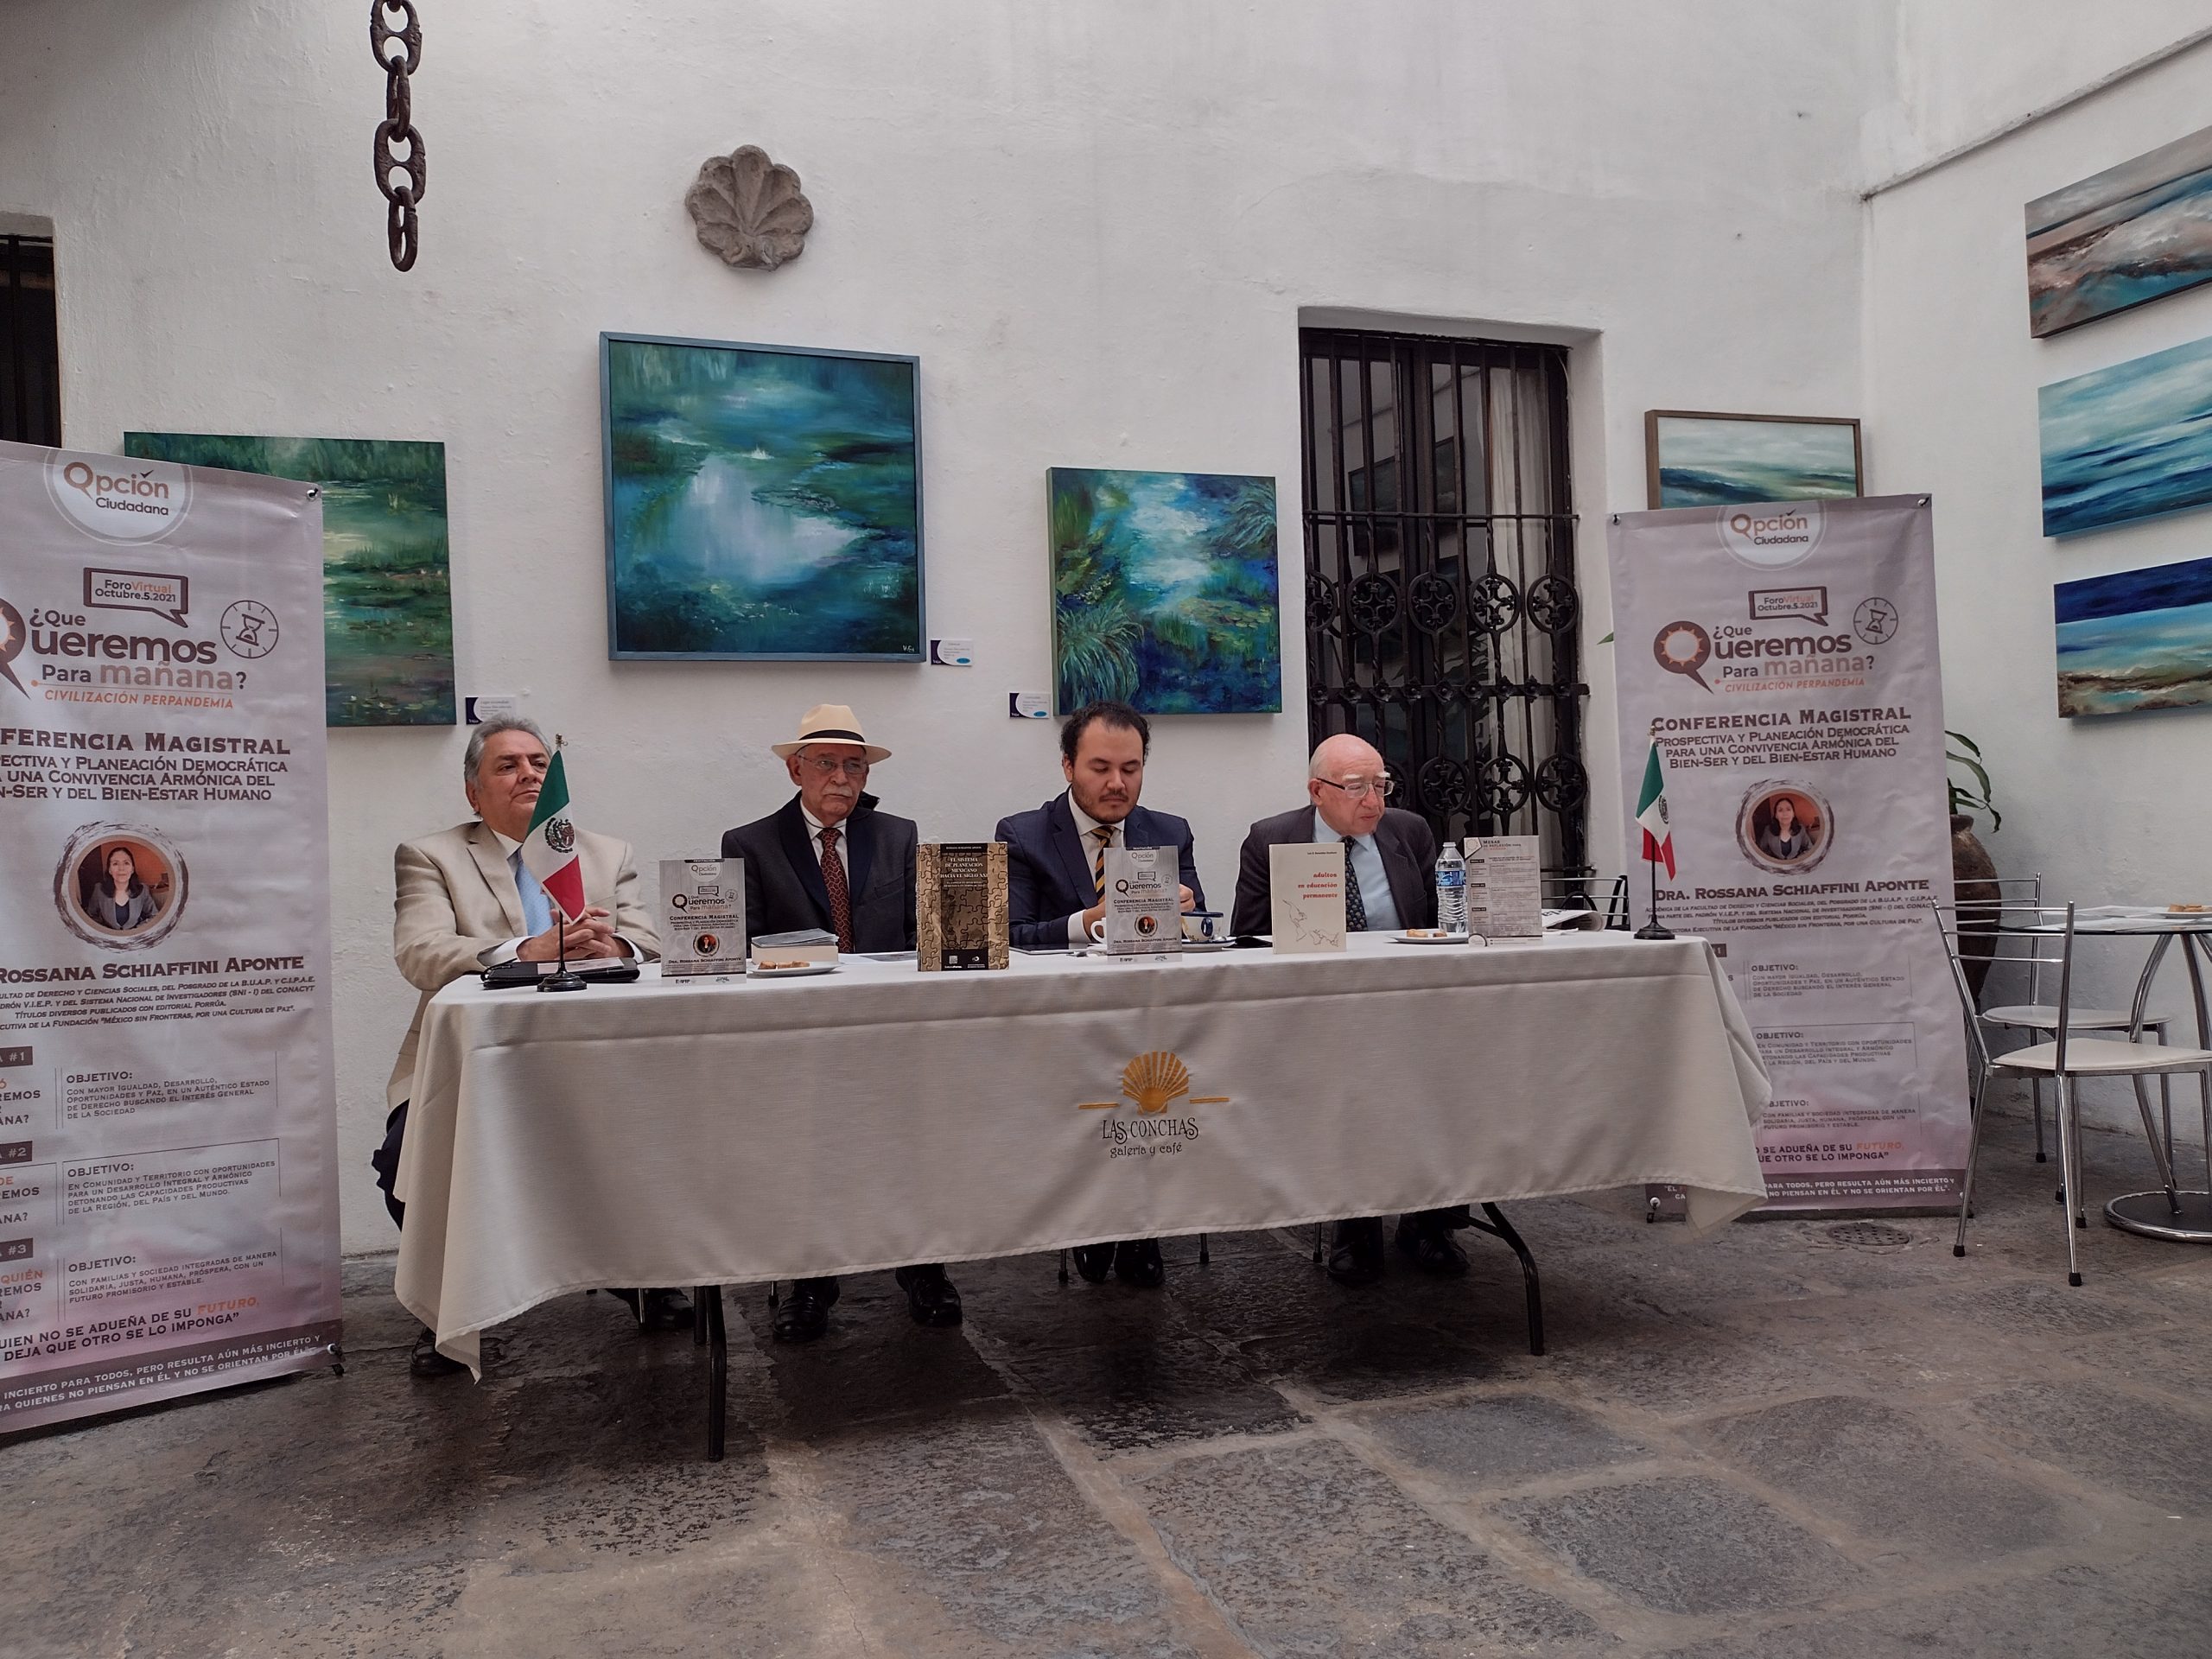 Guillermo Medina Álvarez, Carlos Meza y Ernesto García, integrantes del colectivo Opción Ciudadana, sostuvieron en rueda de prensa